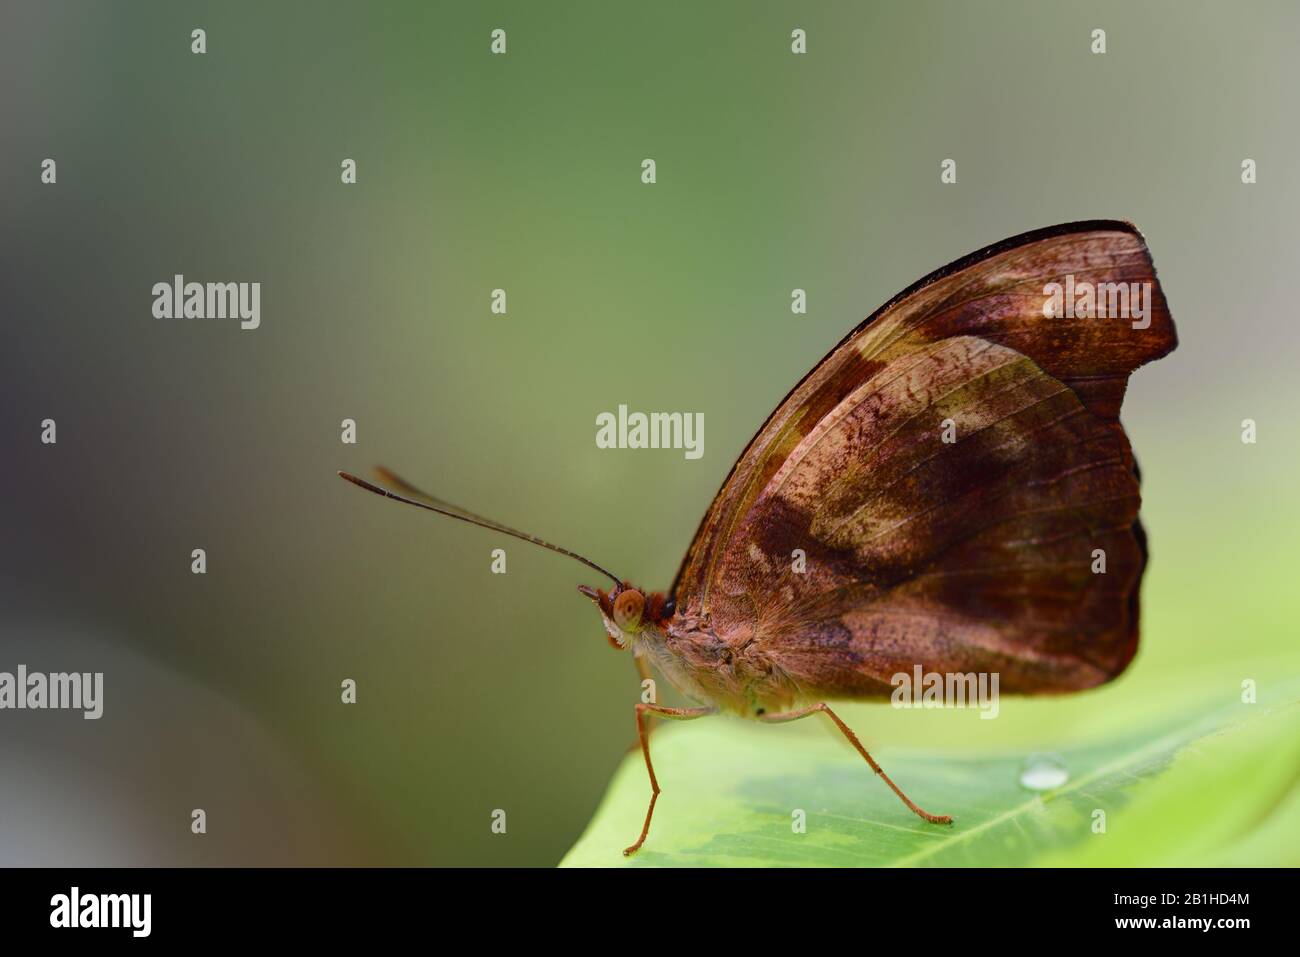 Primo piano di una piccola farfalla tropicale marrone, seduta su una foglia verde, su uno sfondo verde con spazio per il testo Foto Stock